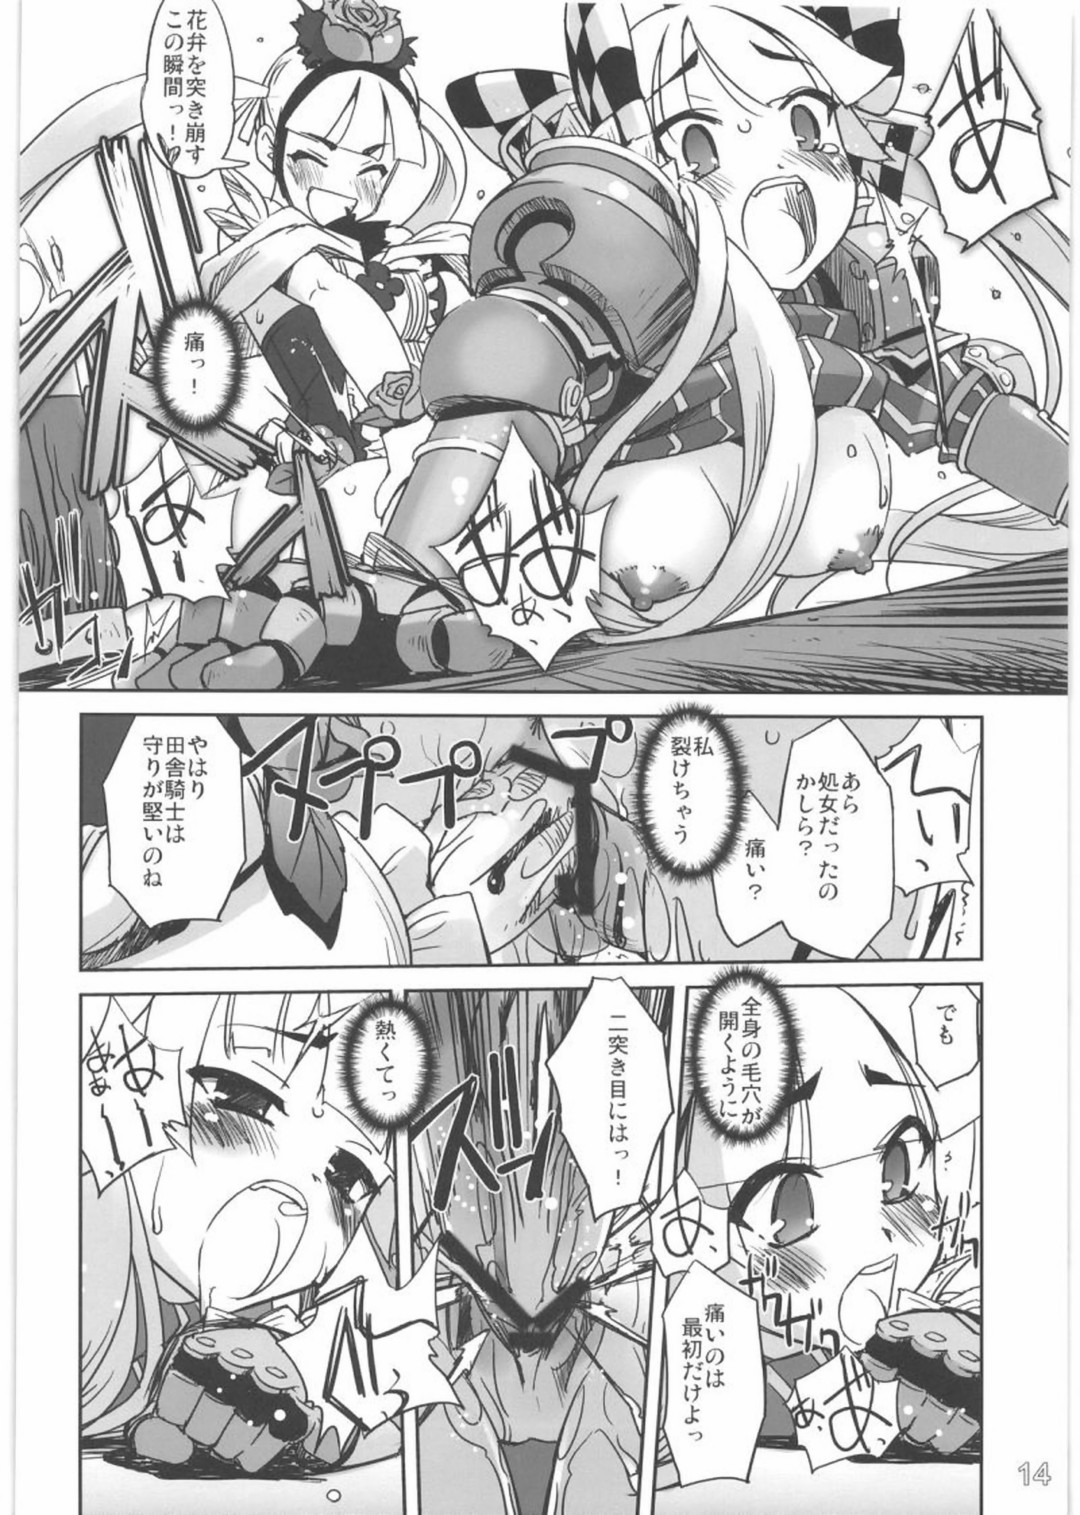 (C76) [G-Power! (SASAYUKi)] とある騎士と姫のお話 (セブンスドラゴン)